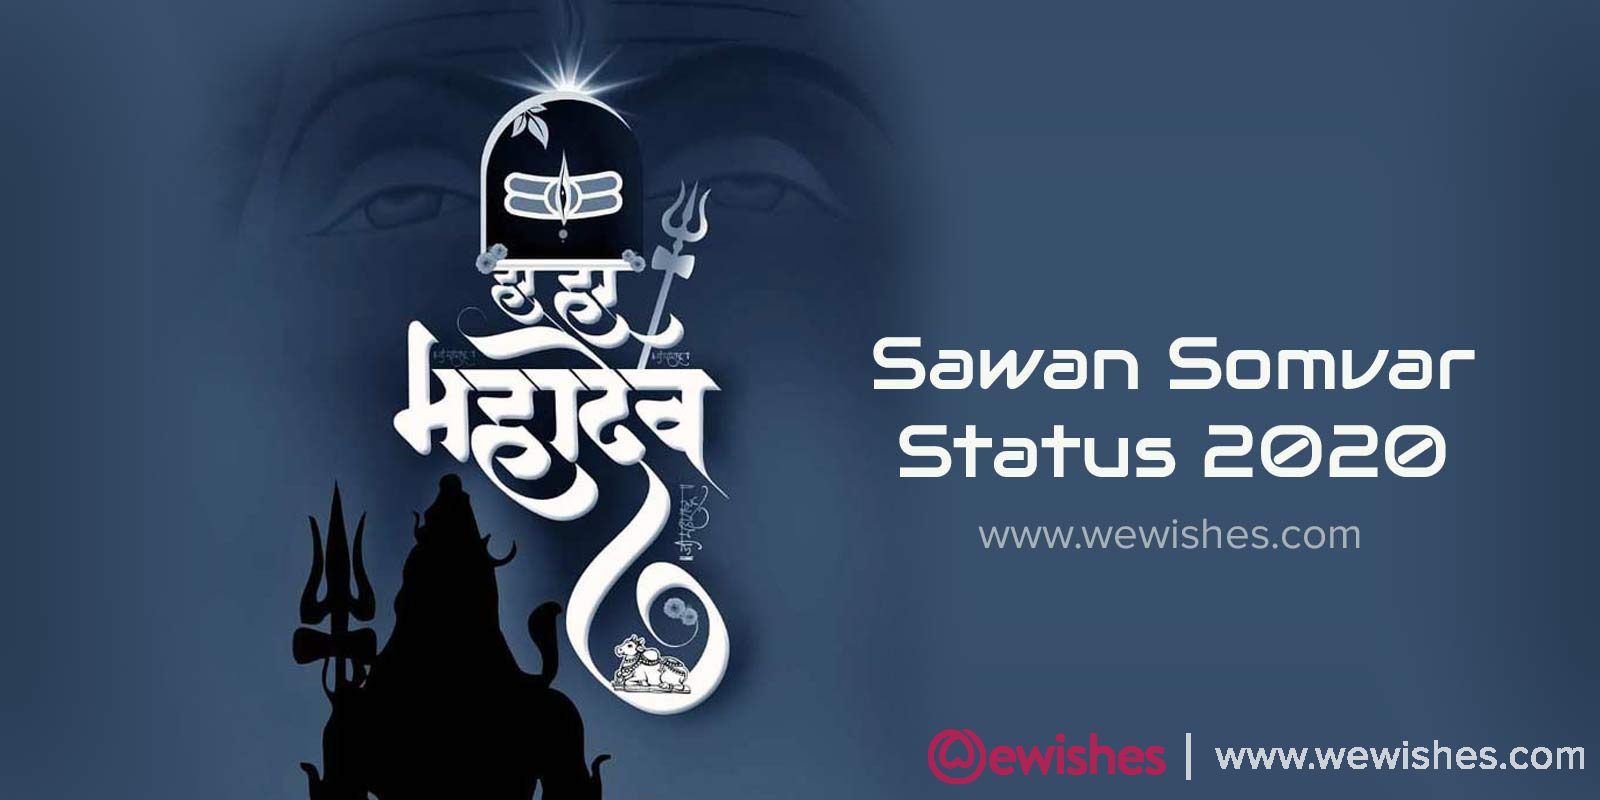 Sawan Somvar Status 2020 Wishes Images